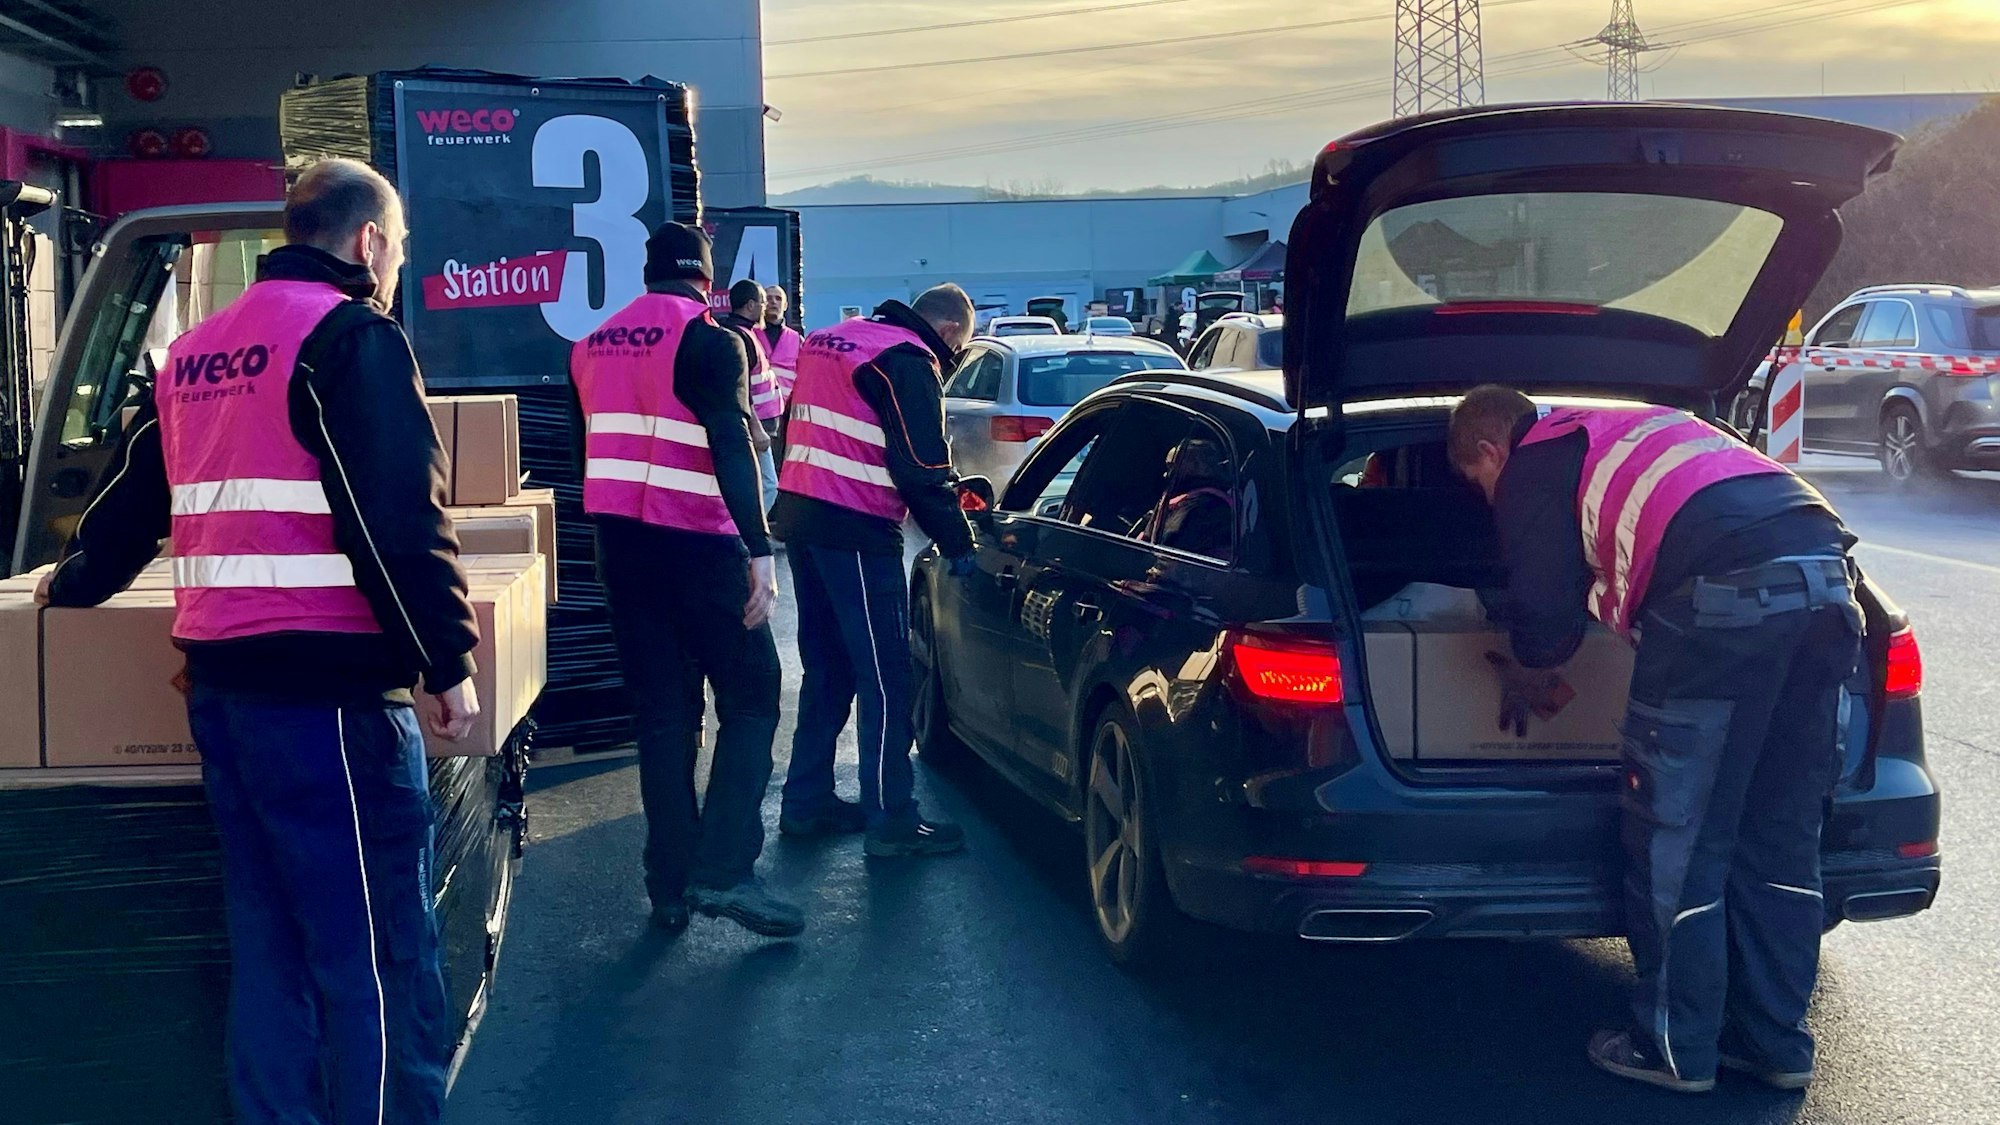 Männer in pinkfarbenen Weco-Westen beladen ein Auto mit langen Paketen.